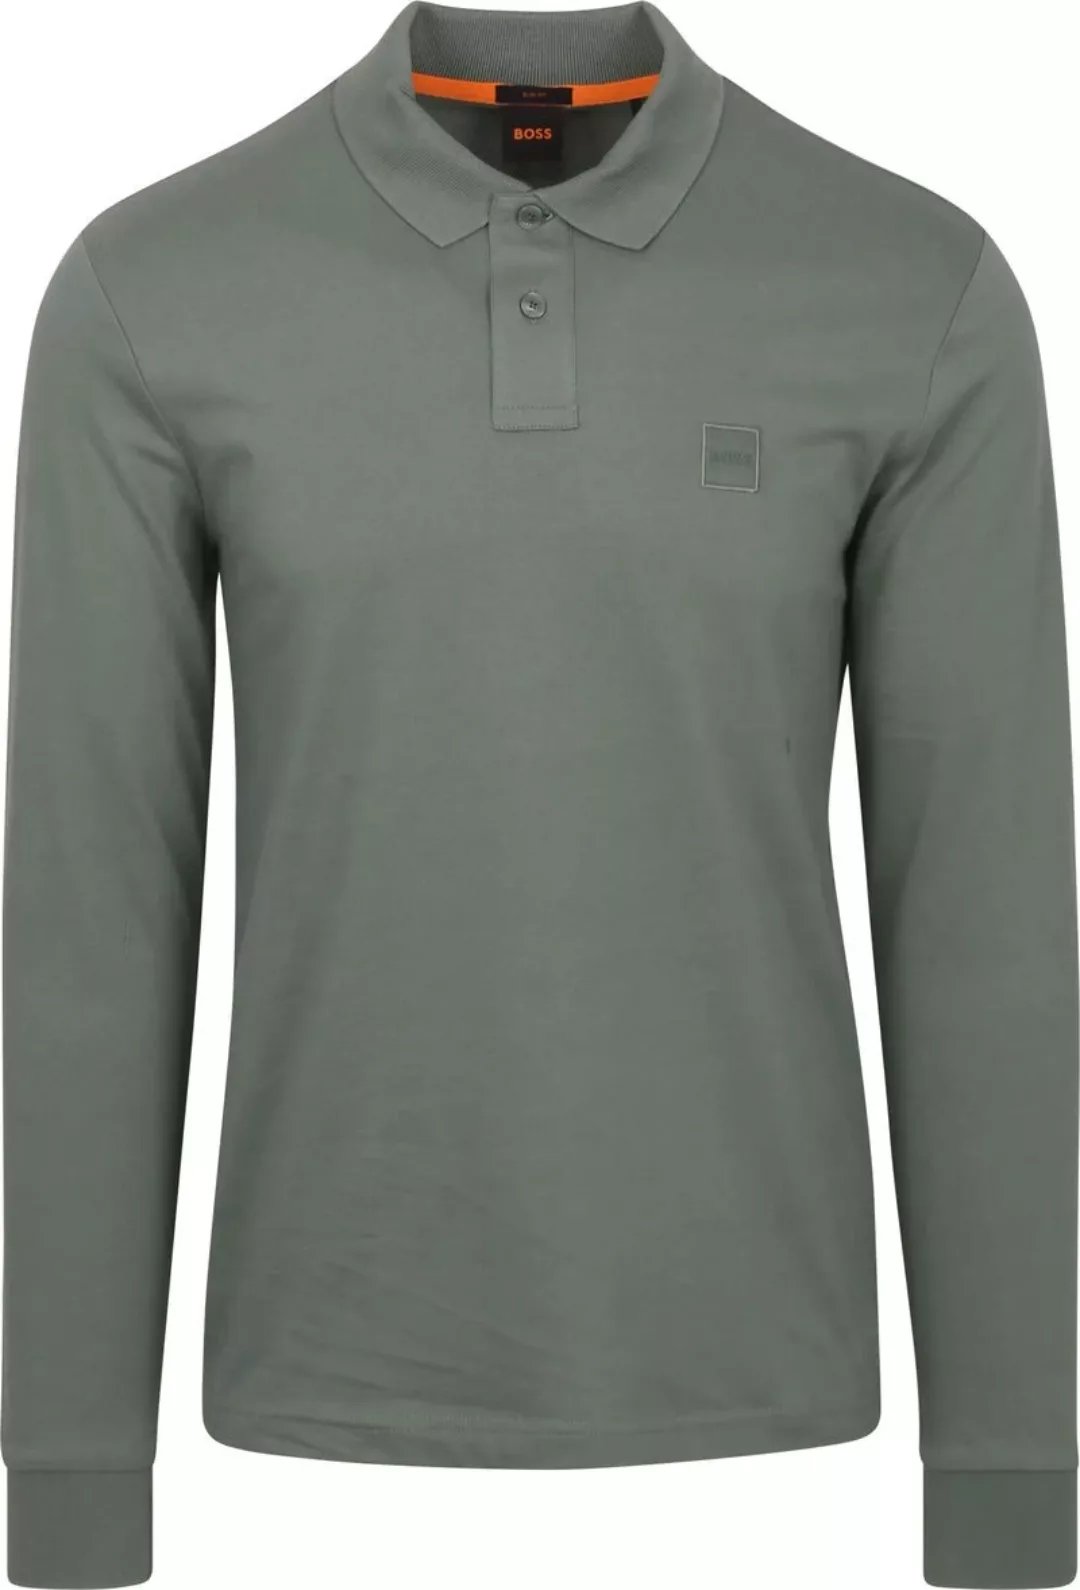 BOSS ORANGE Poloshirt "Passerby", mit BOSS-Logobadge günstig online kaufen